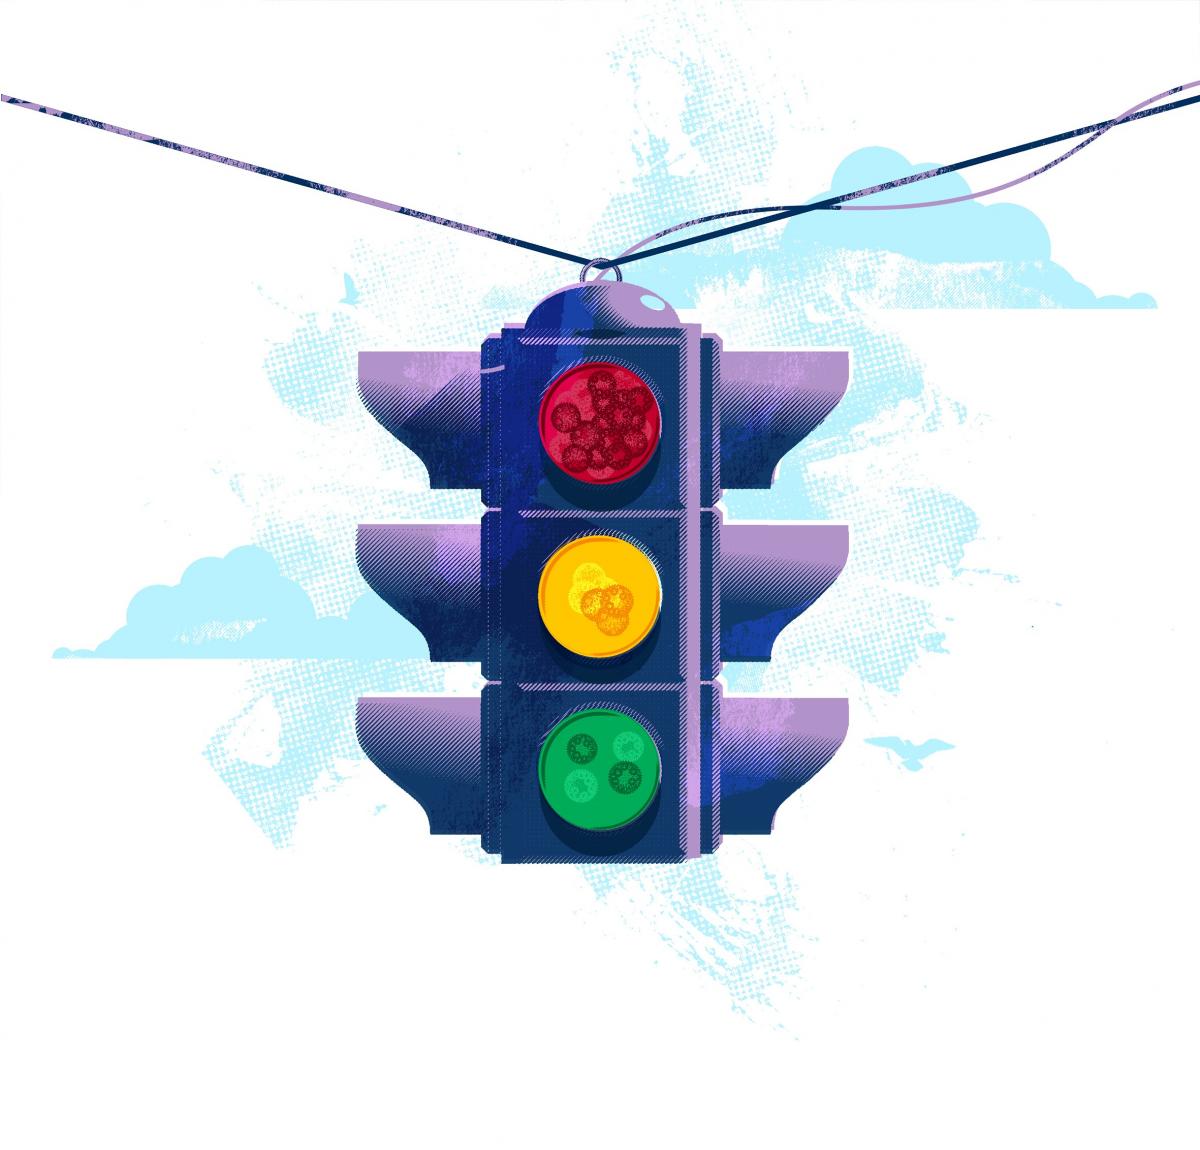 [Illustration of a traffic light]